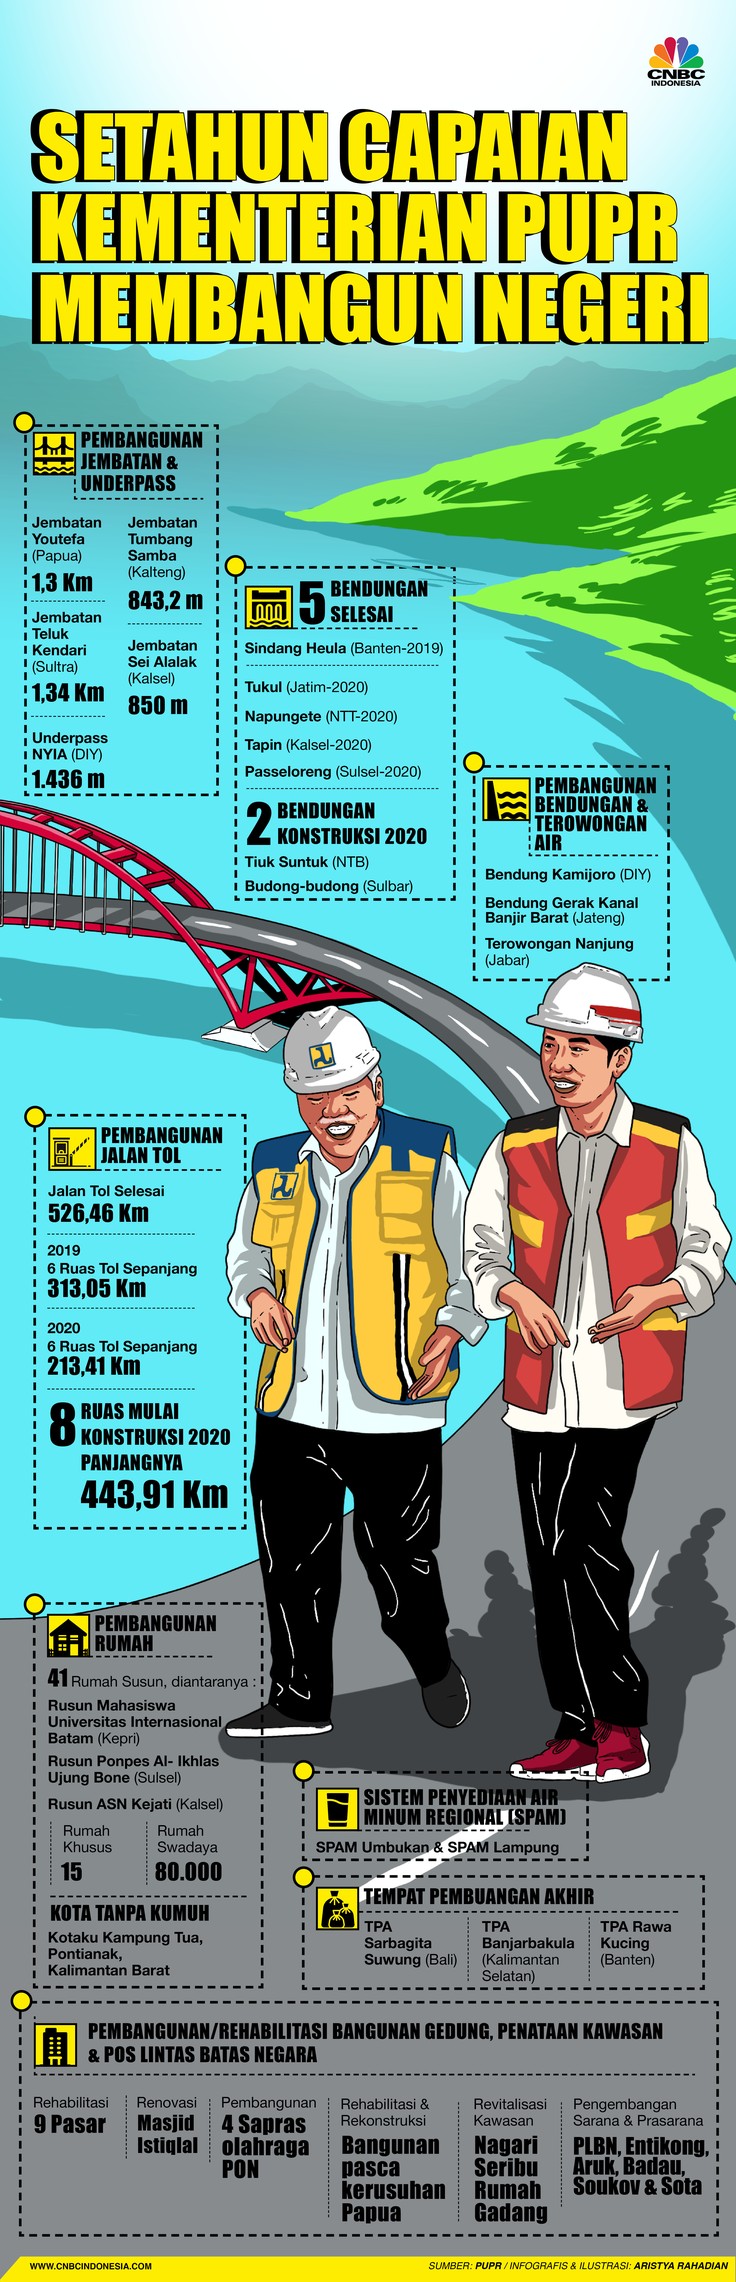 Infografis/Setahun Capaian Kementerian PUPR Membangun negeri/Aristya Rahadian